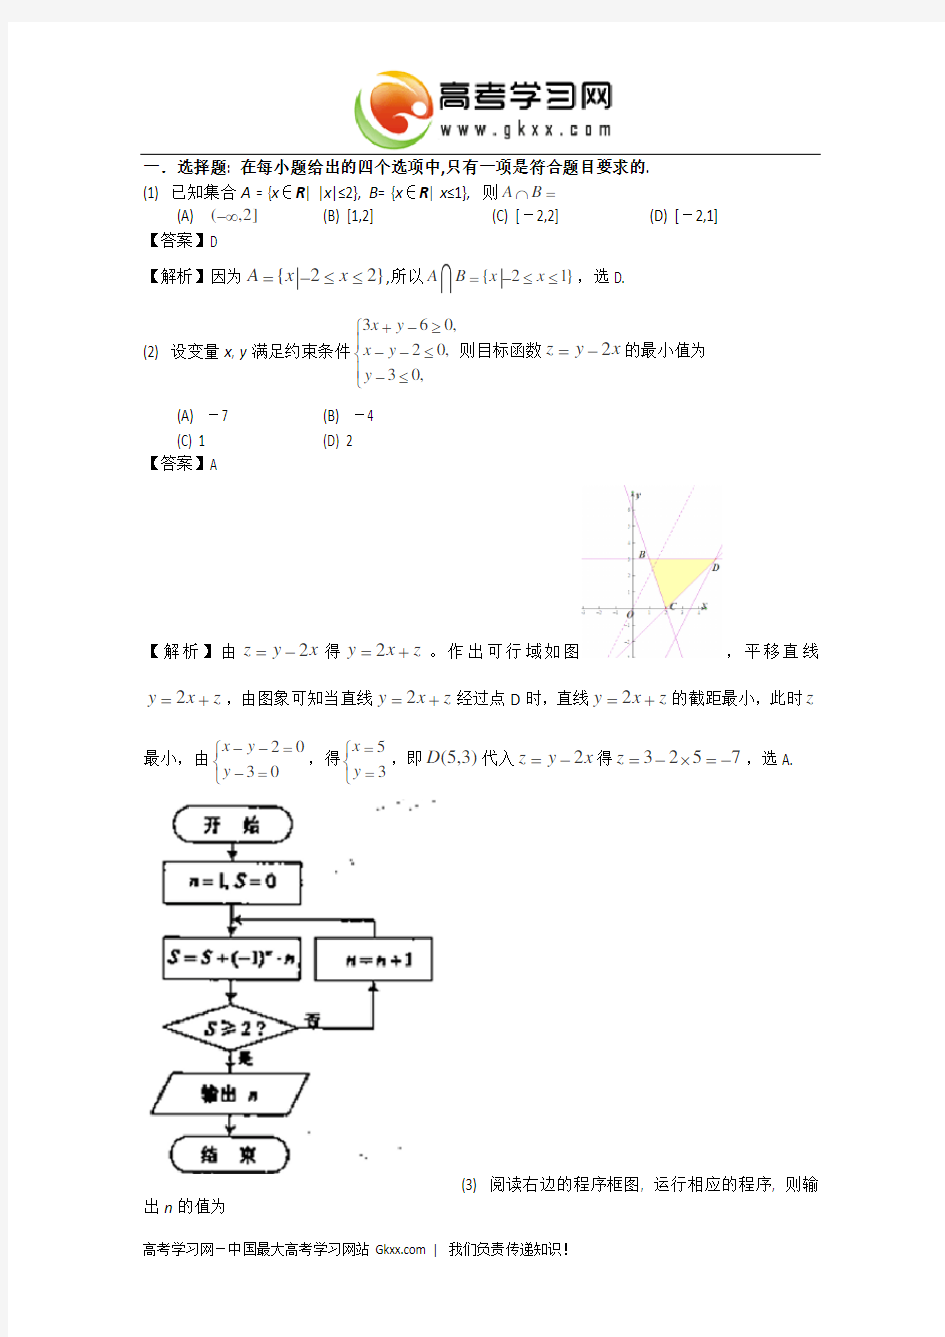 2013年高考真题——文科数学(天津卷)解析版